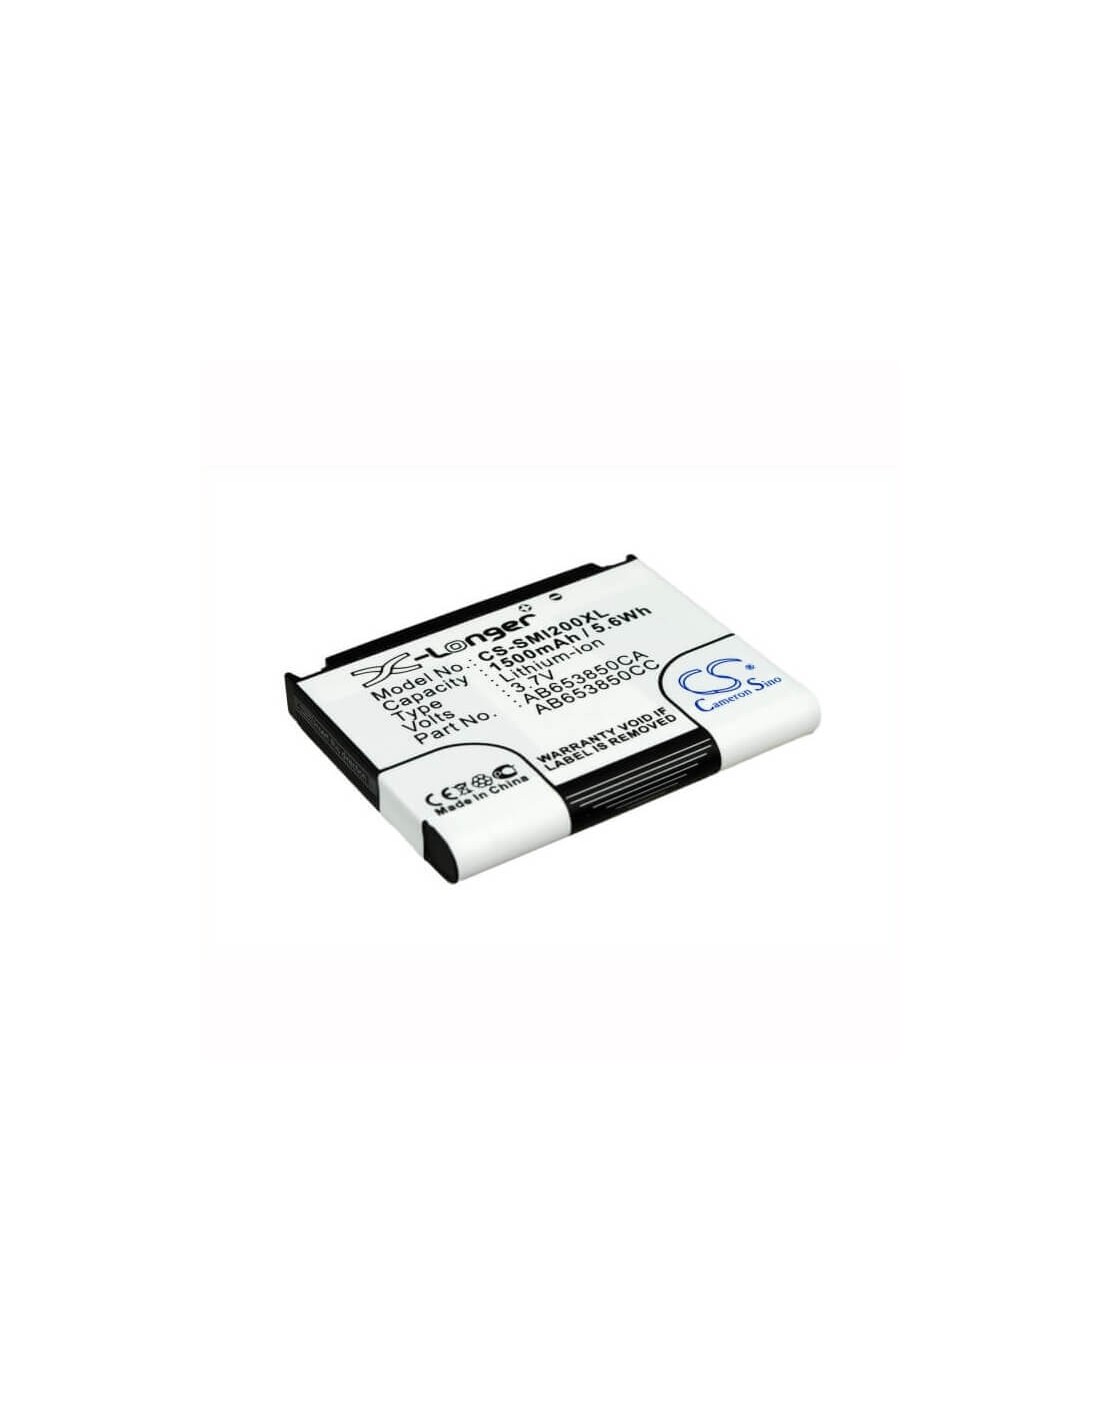 Battery for Samsung Nexus S, GT-I9020, GT-I9020T 3.7V, 1500mAh - 5.55Wh